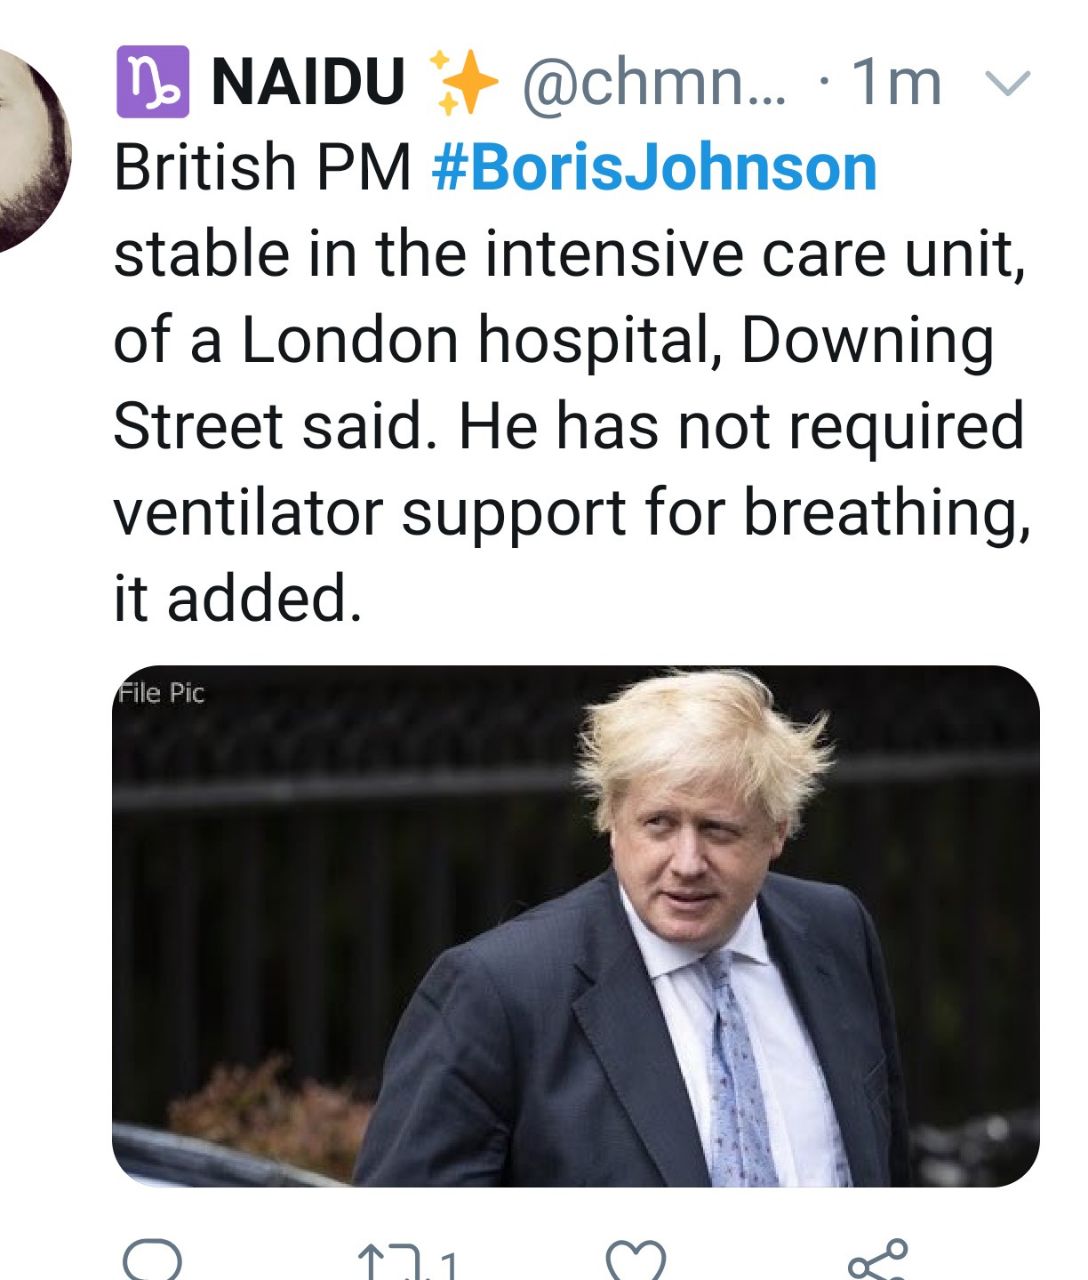 دفتر نخست وزیری بریتانیا: بوریس جانسون حالا بدون ونتیلاتور تنفس می کند +عکس